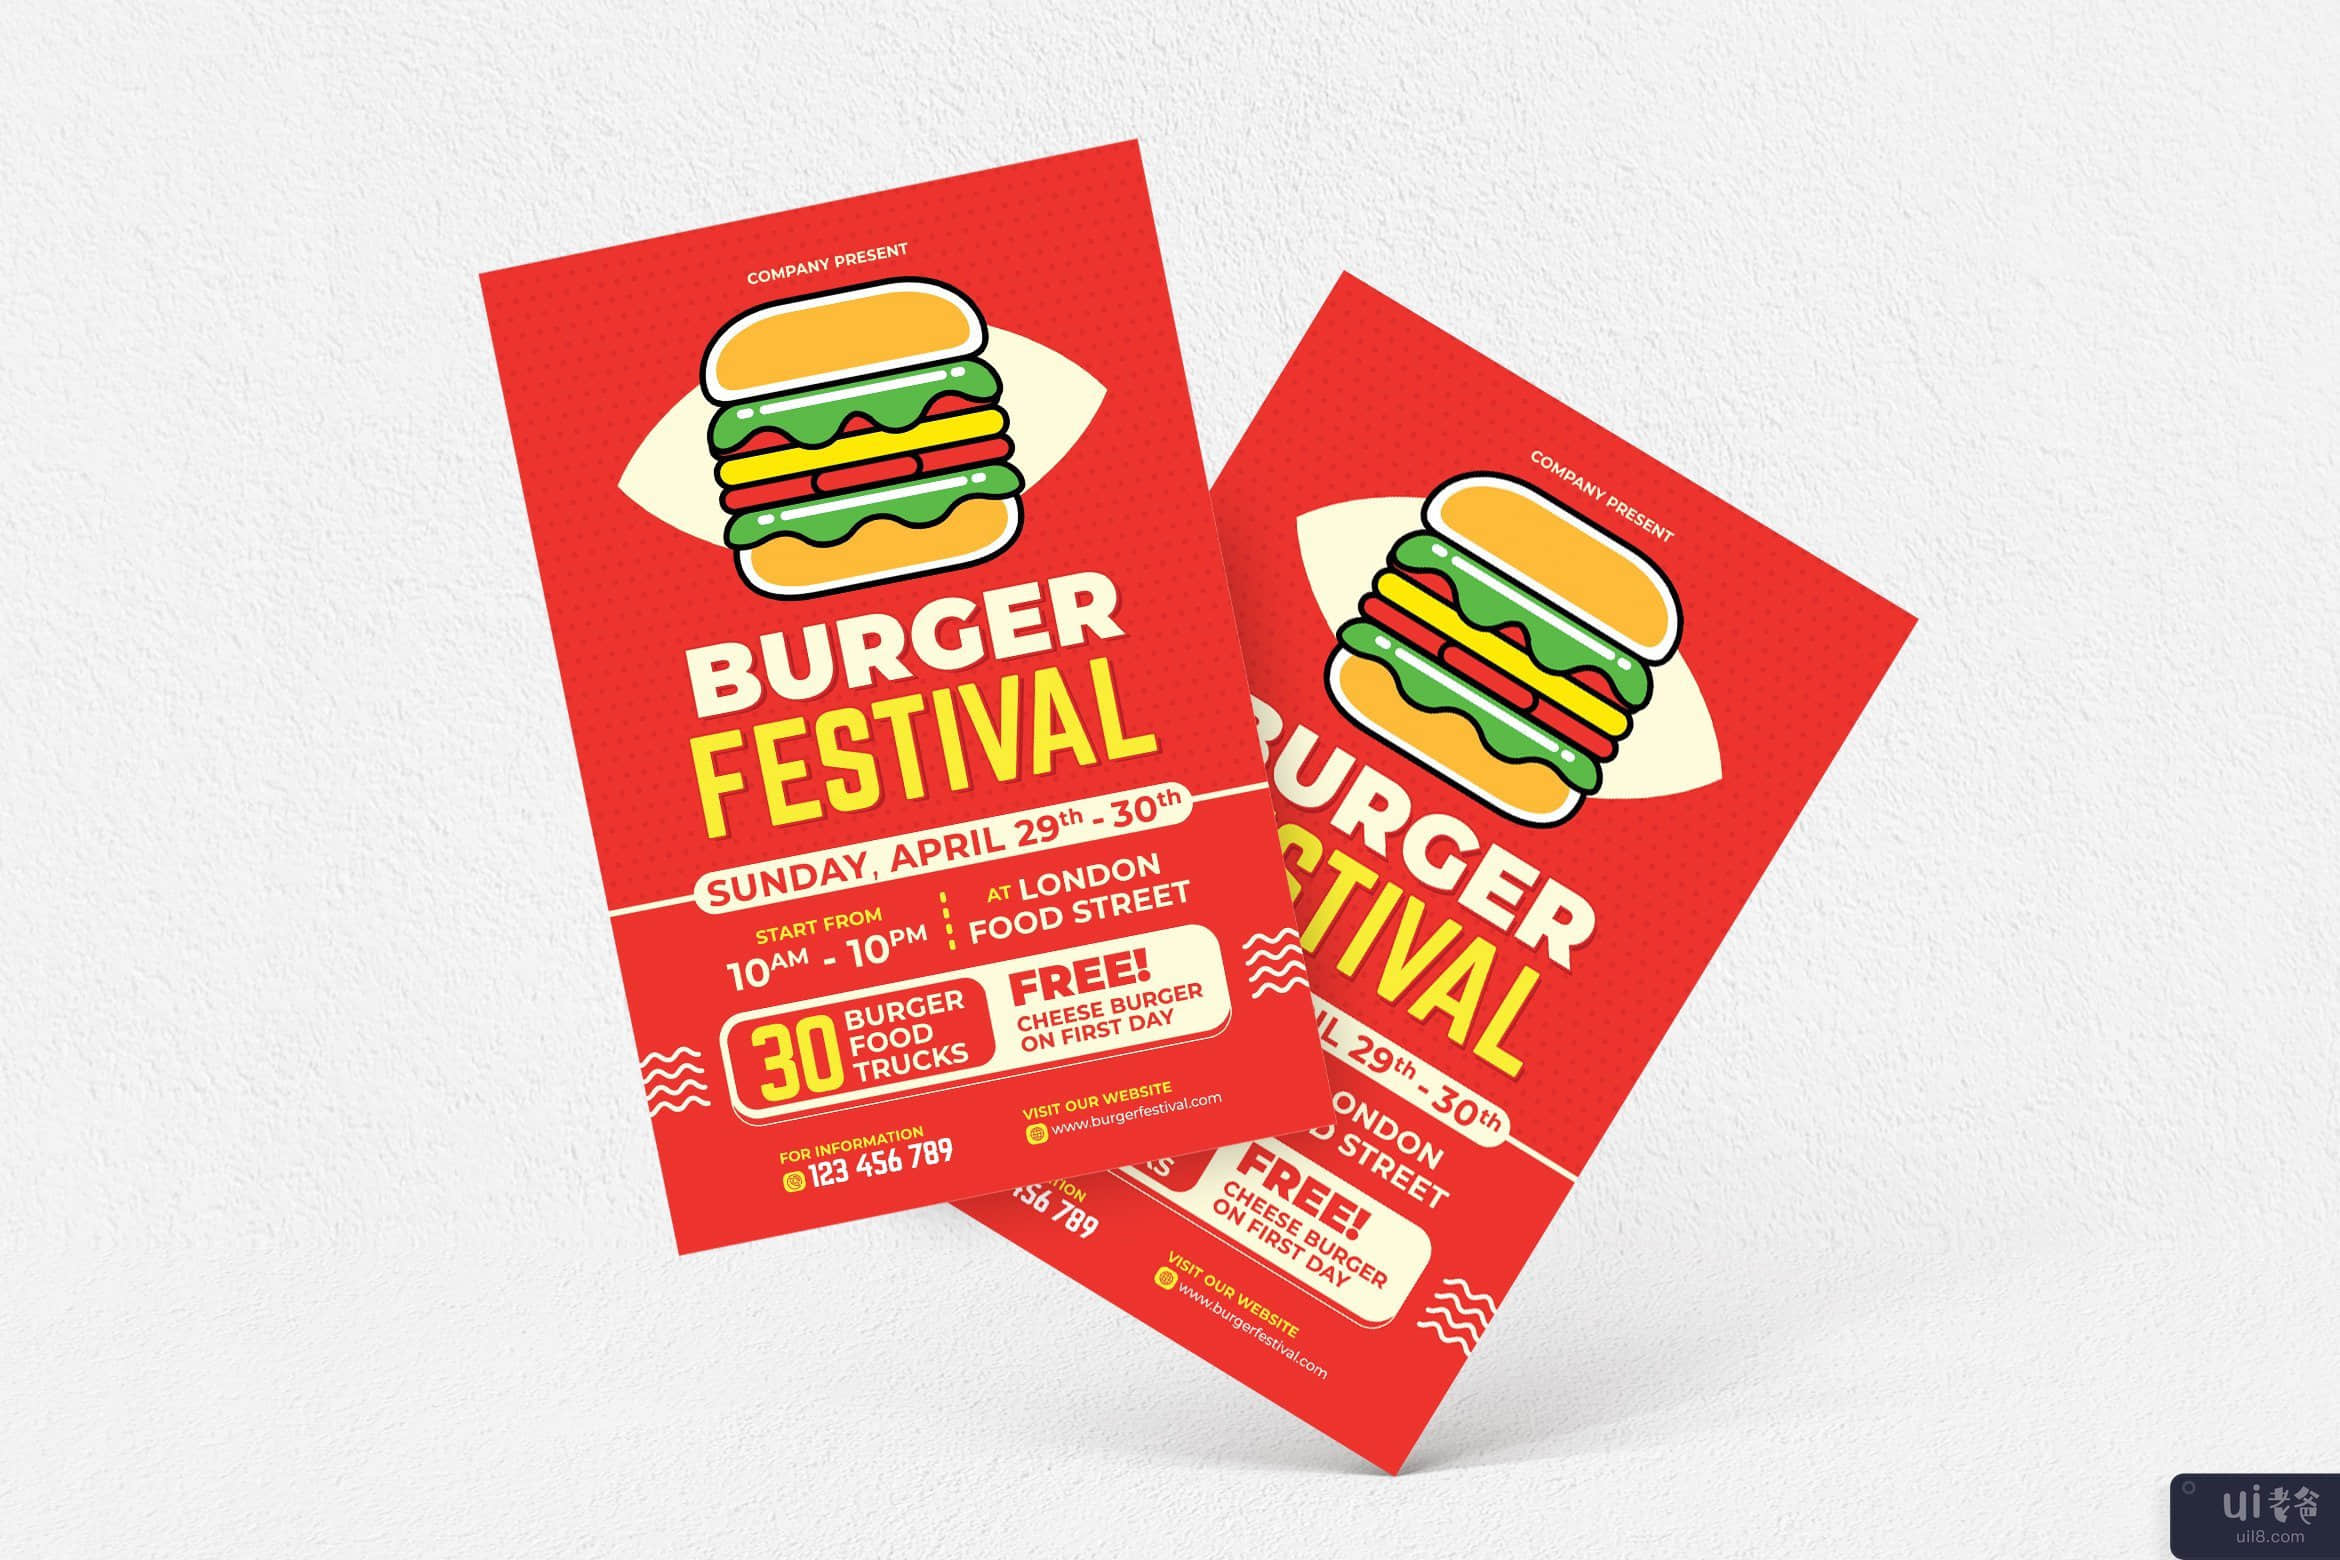 汉堡节 #01 传单(Burger Festival #01 Flyer)插图2